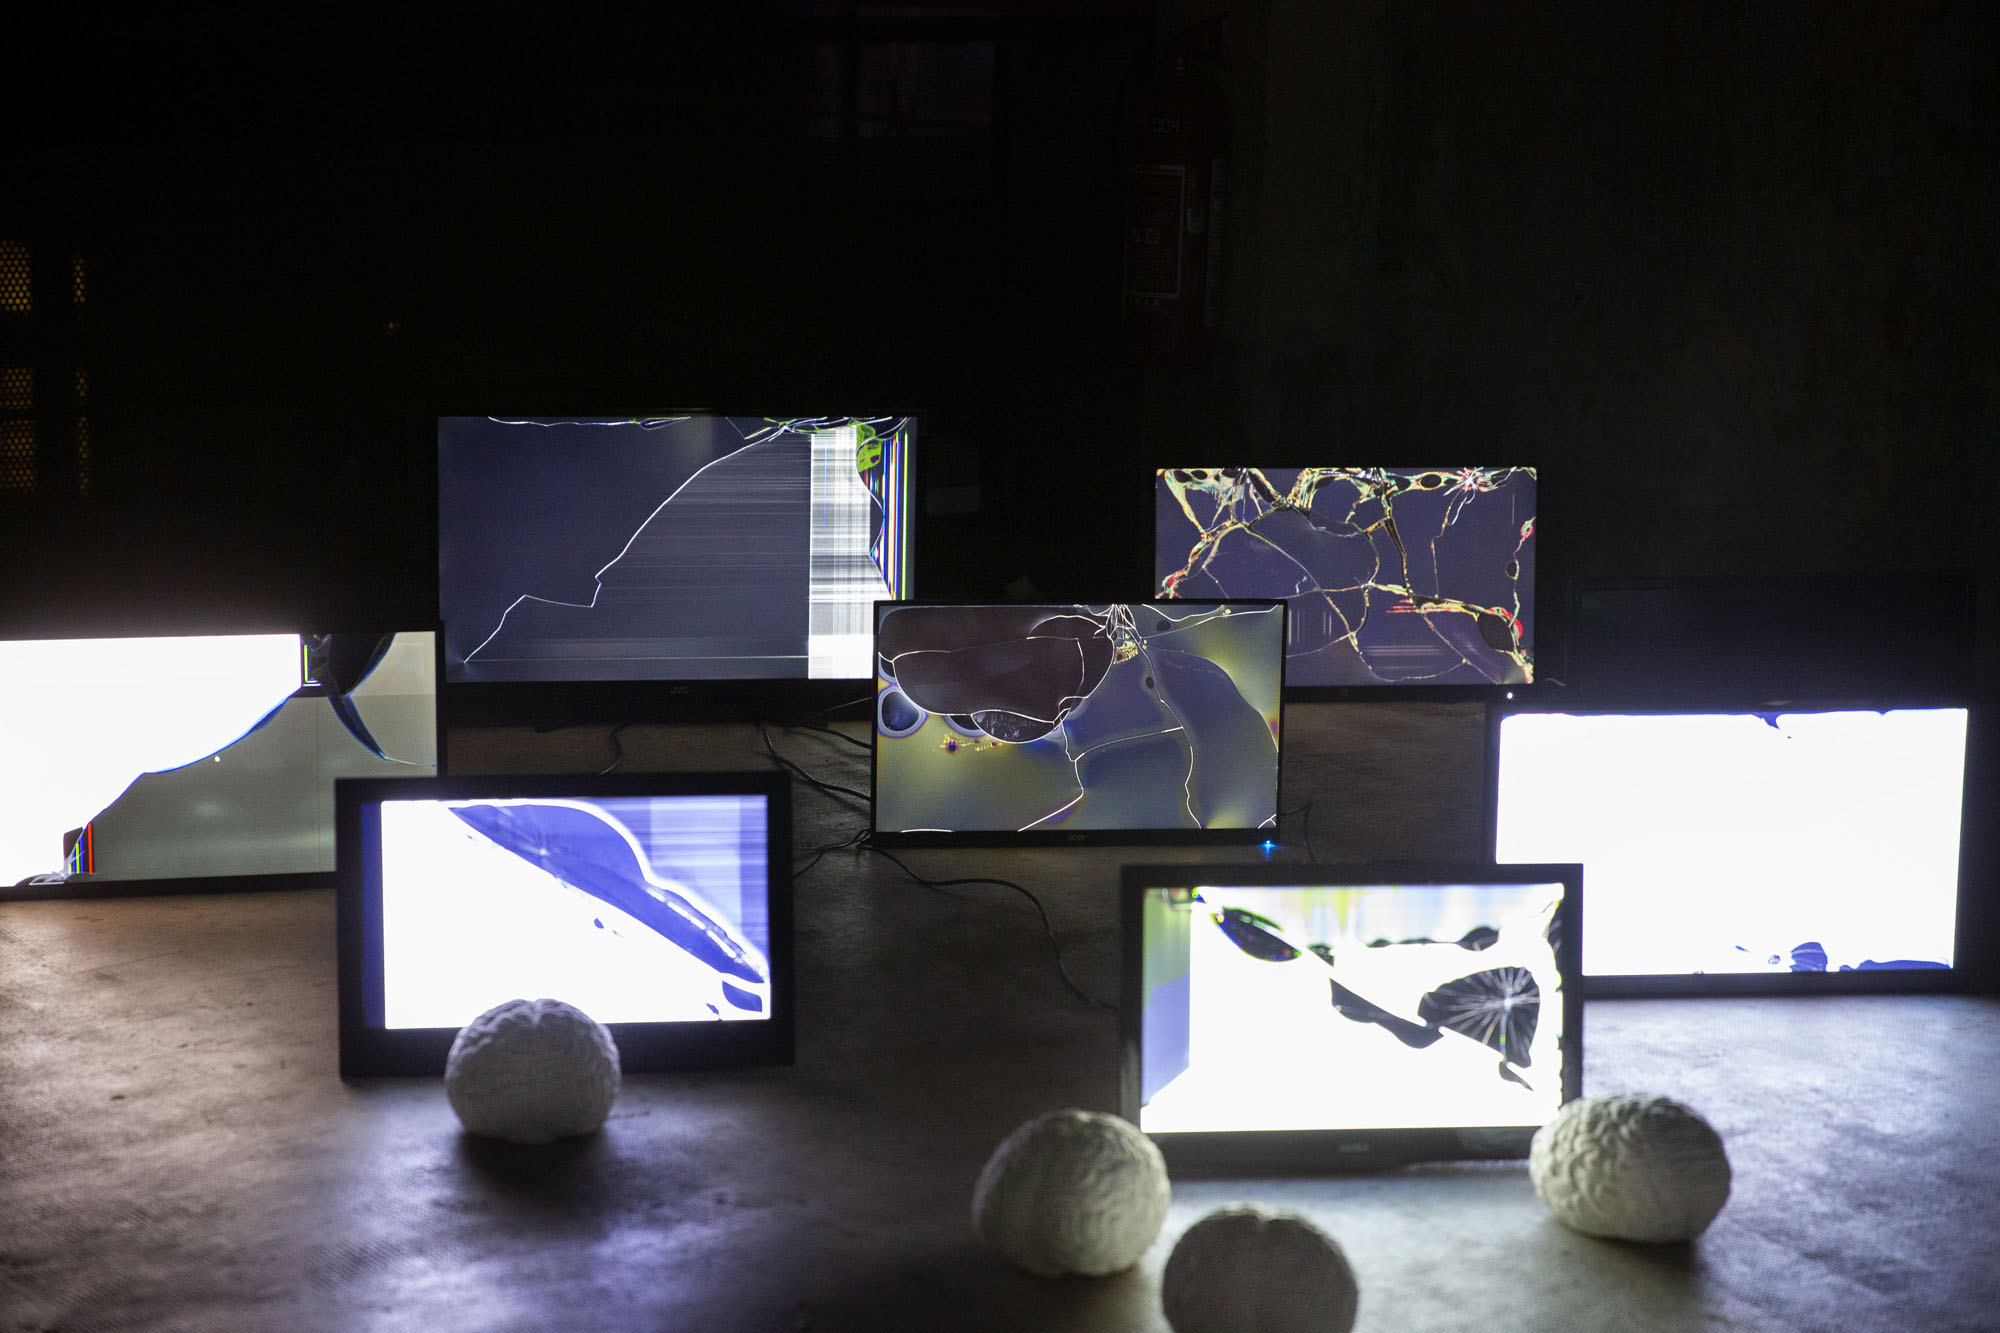 Installation artistique en collaboration avec Elisa Fantozzi. Des cerveaux en plâtre font face à des écrans de télévision défectueux.